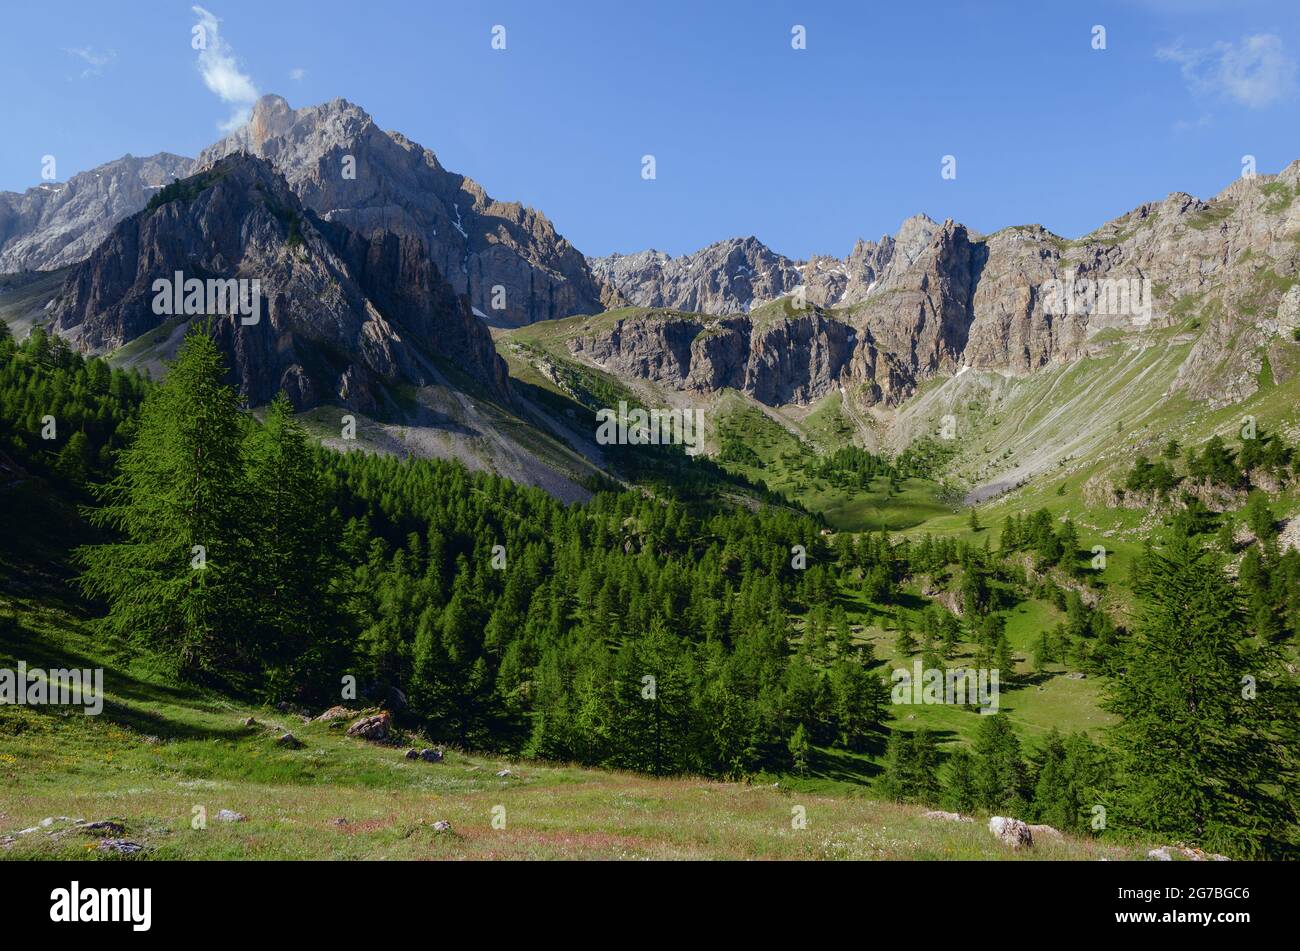 Catena montuosa, valle e foresta sul sentiero per colle delle muine in valle maira, bellissimo paesaggio nelle alpi marittime del Piedmo Foto Stock